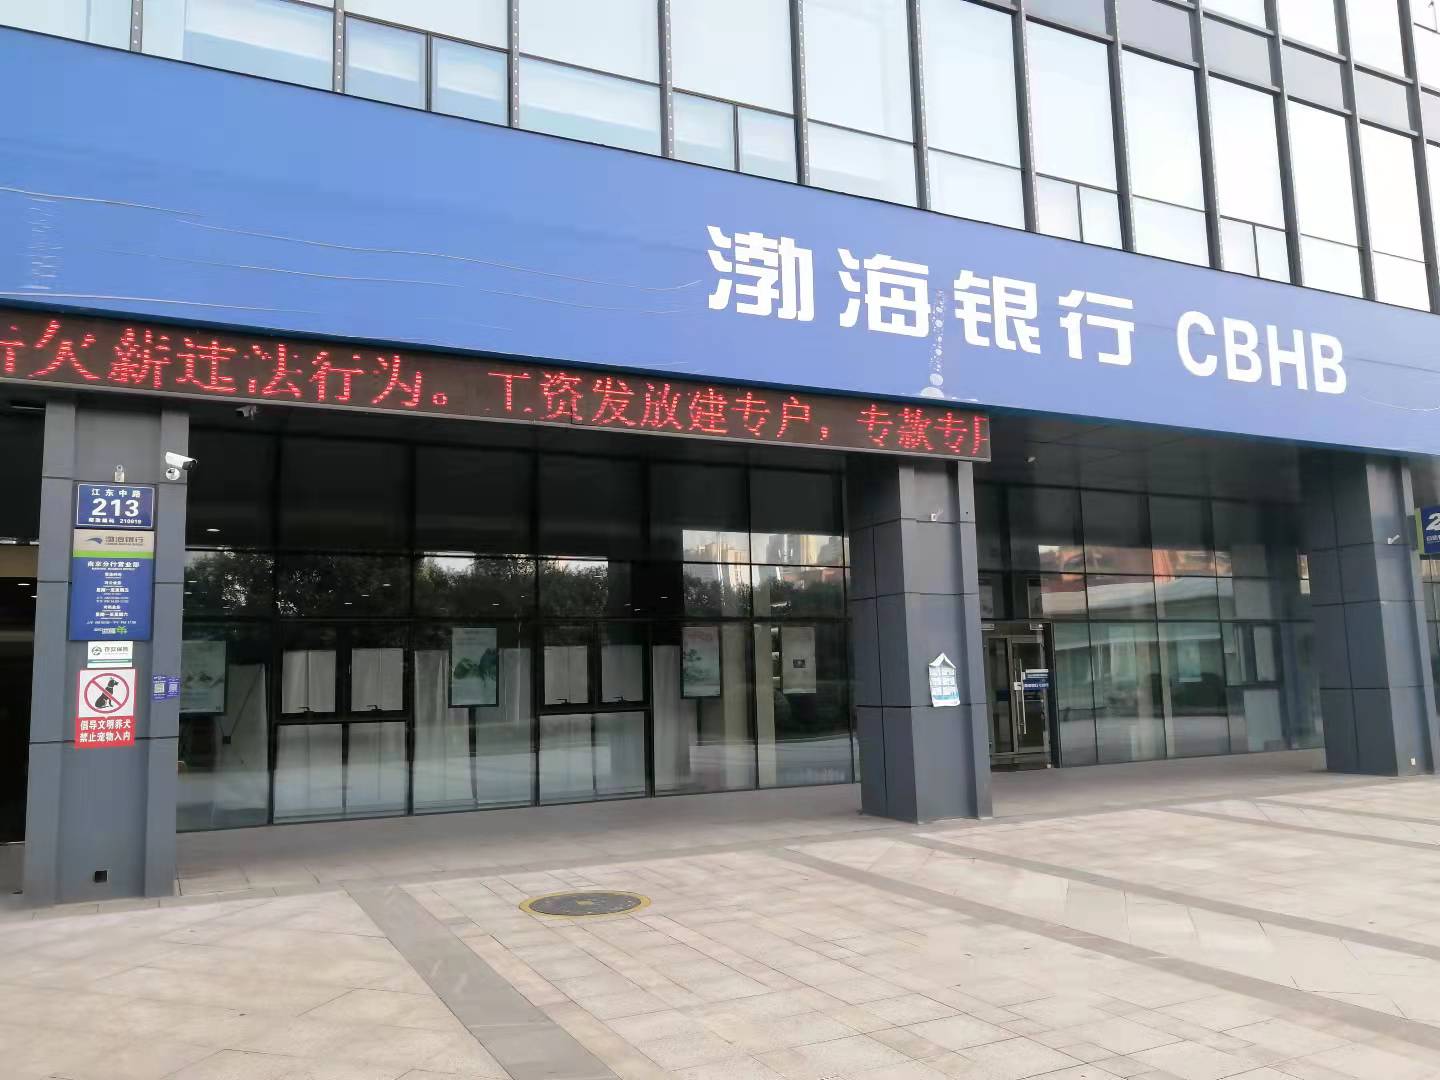 调查|渤海银行南京分行储户28亿存款被莫名质押 涉事方华业石化难觅踪影是假央企